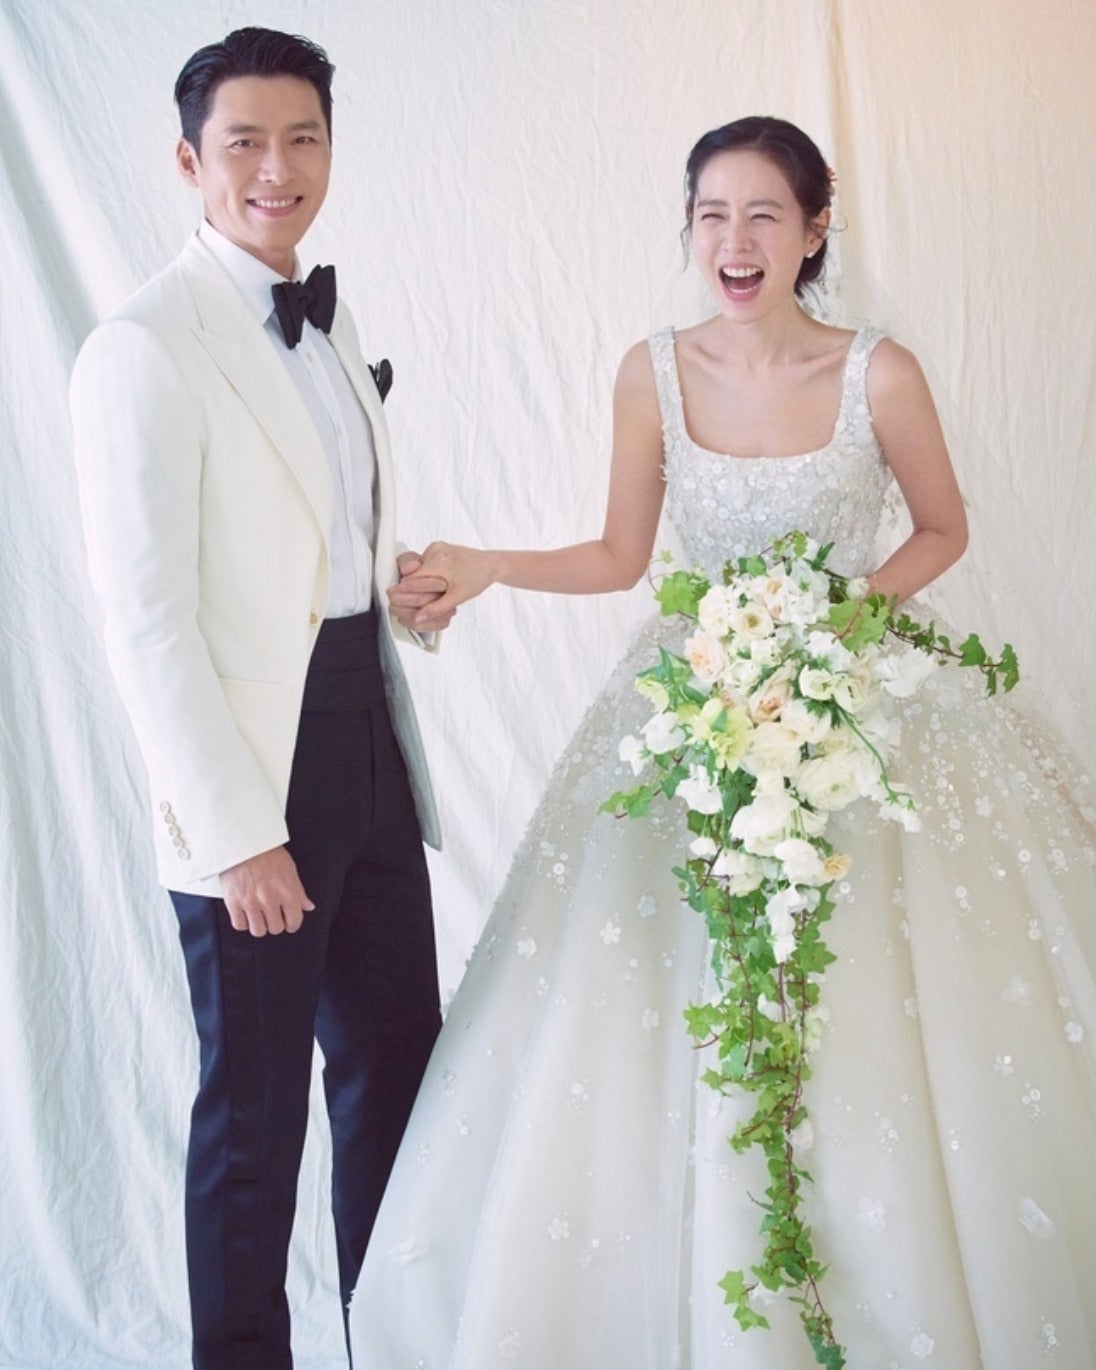 ฮยอนบินและซนเยจินแต่งงานวันนี้